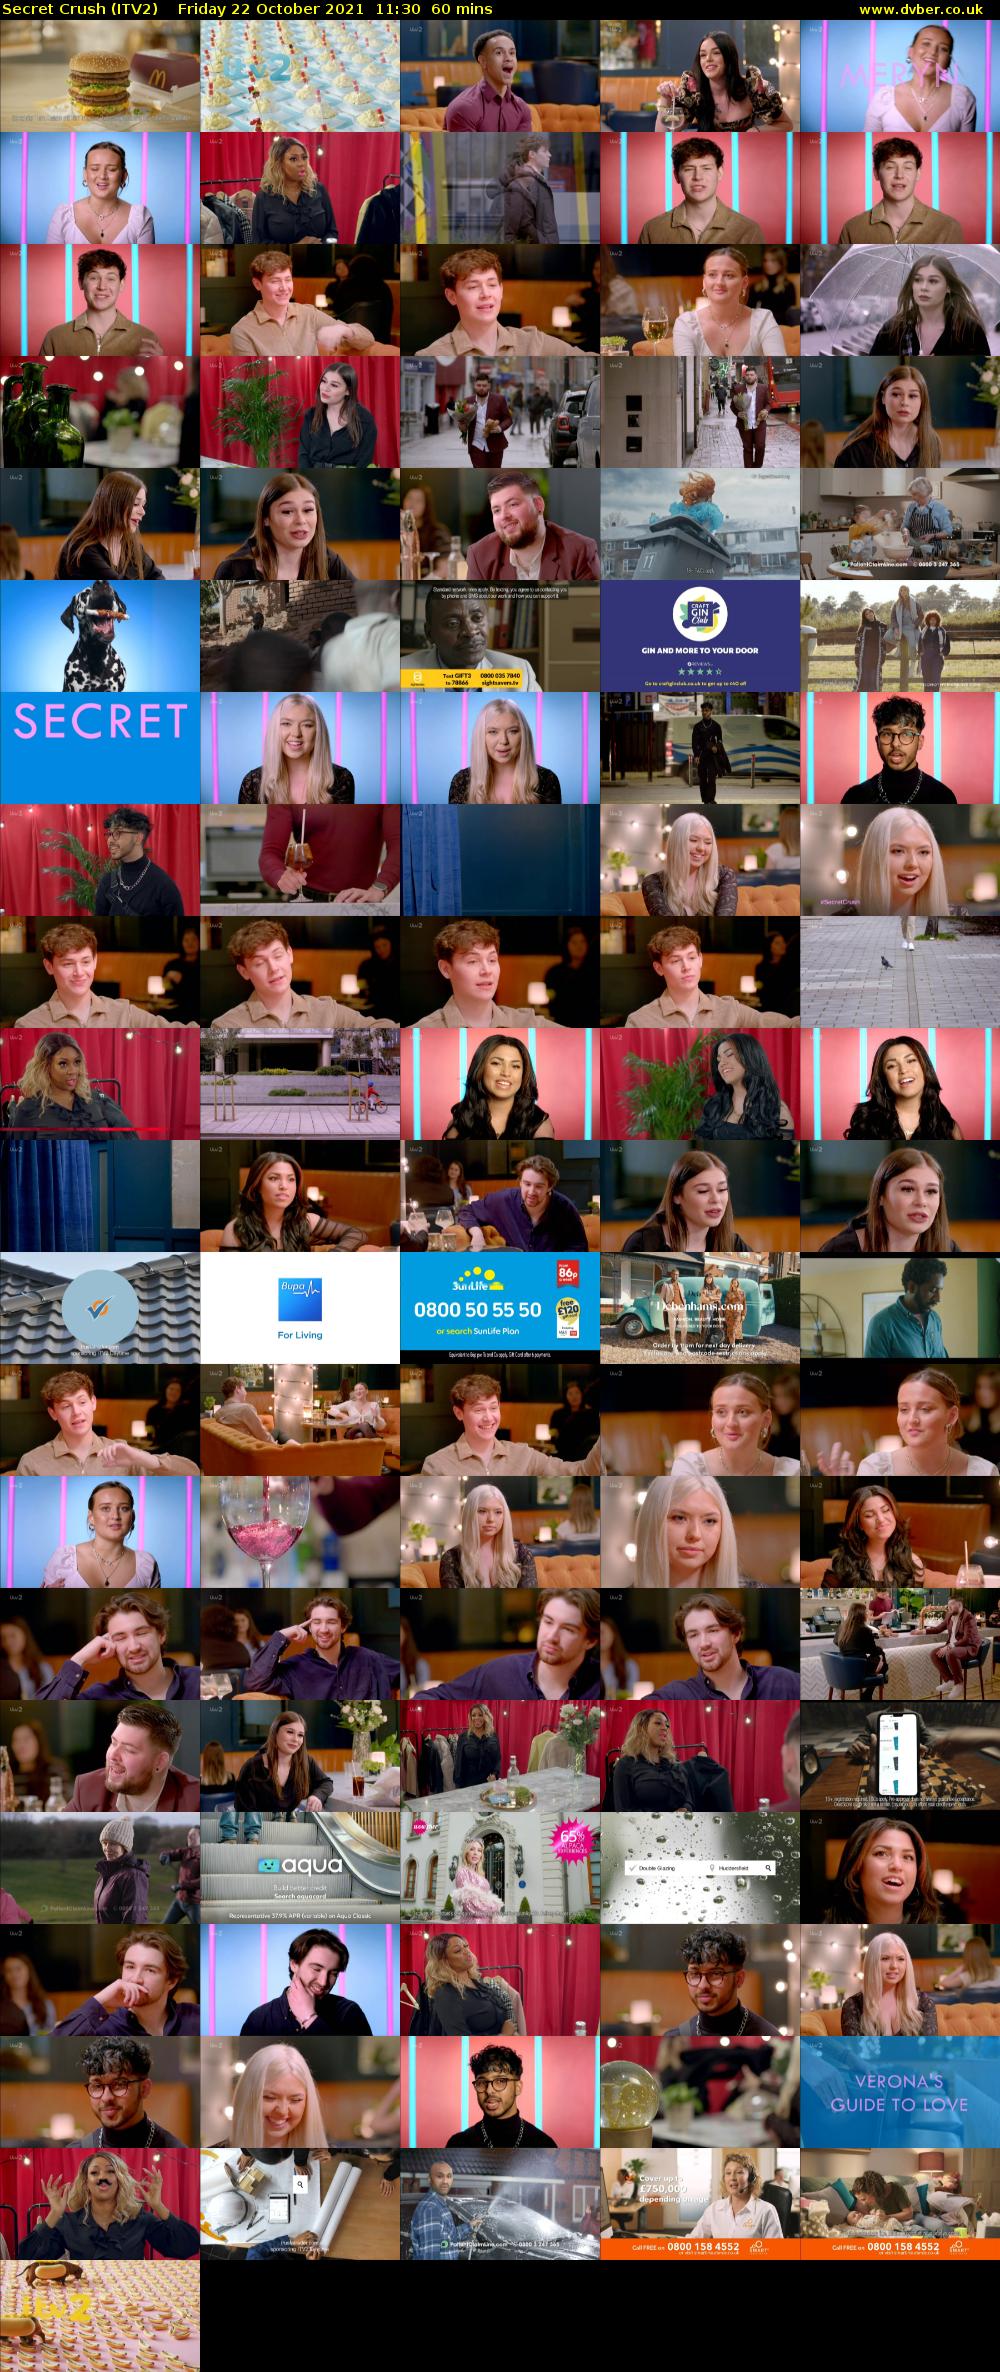 Secret Crush (ITV2) Friday 22 October 2021 11:30 - 12:30